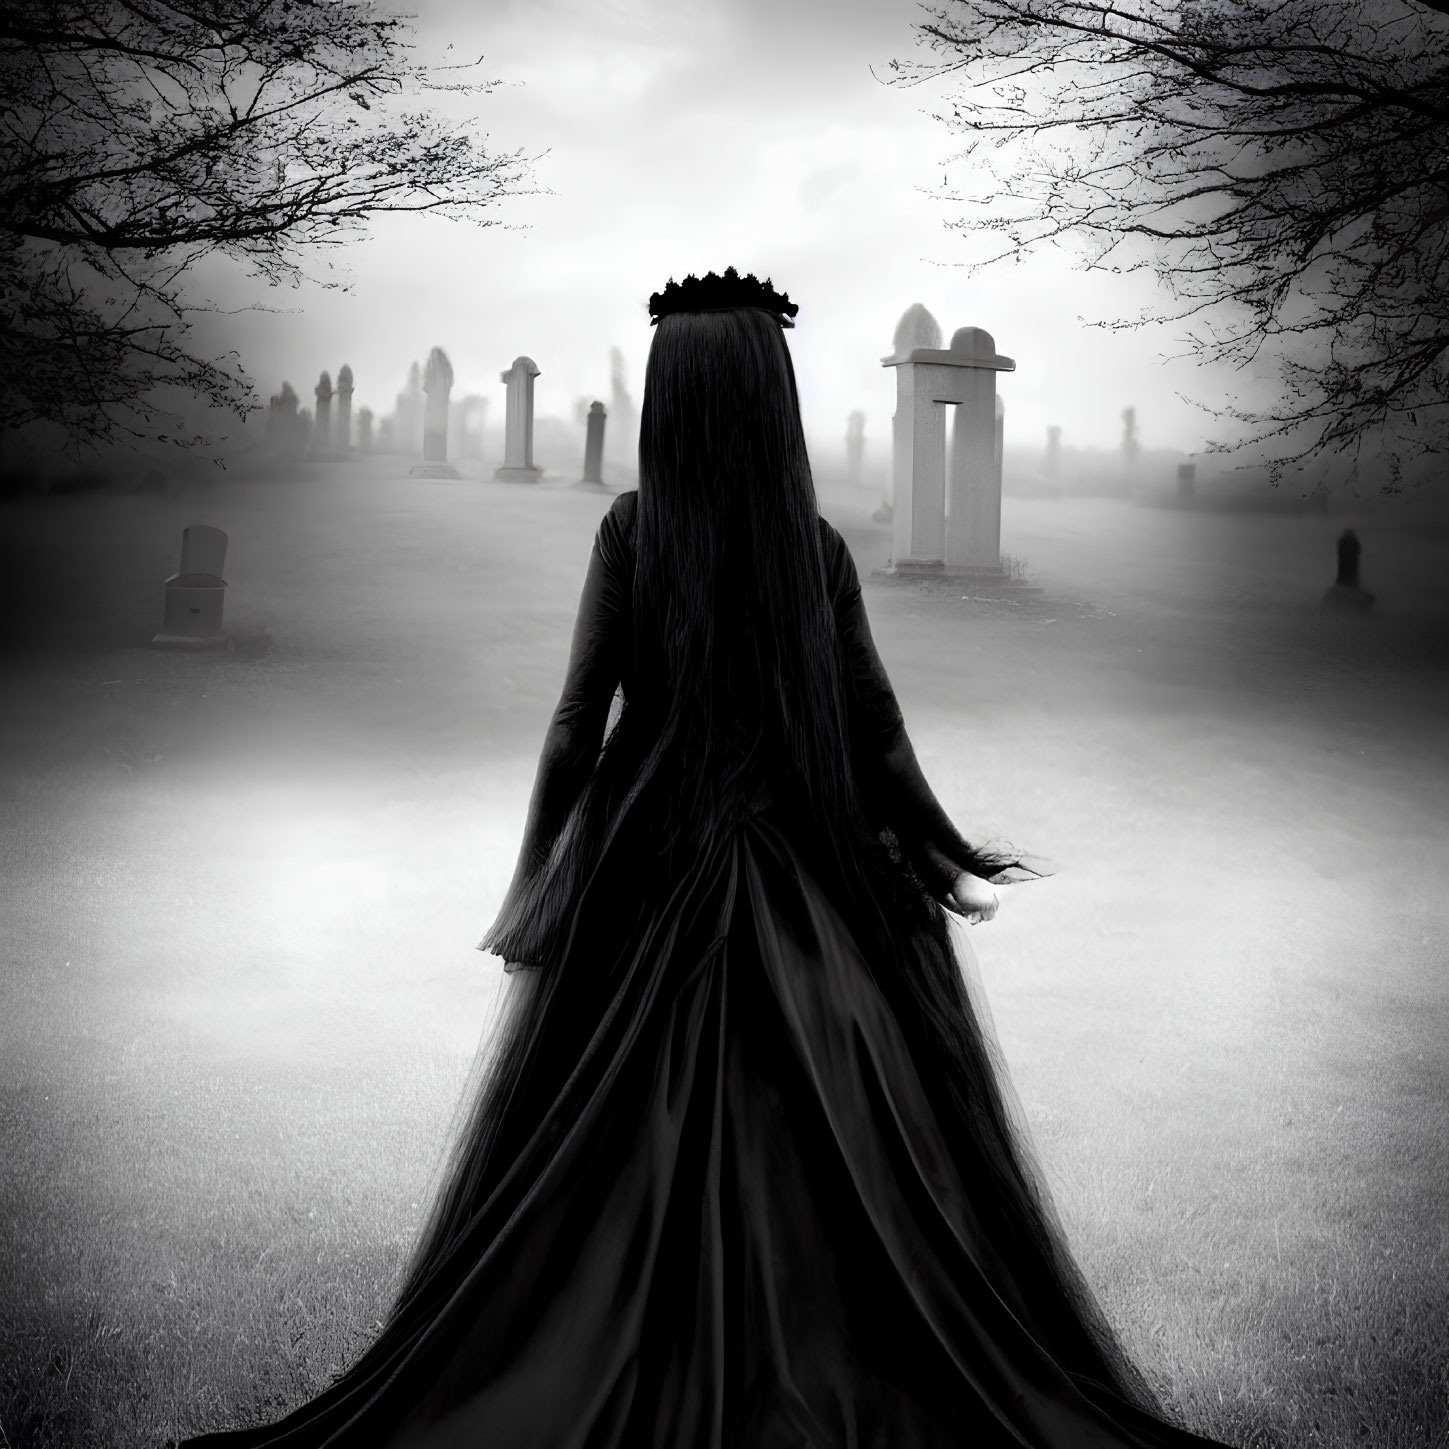 Woman in black dress with crown in misty graveyard scene